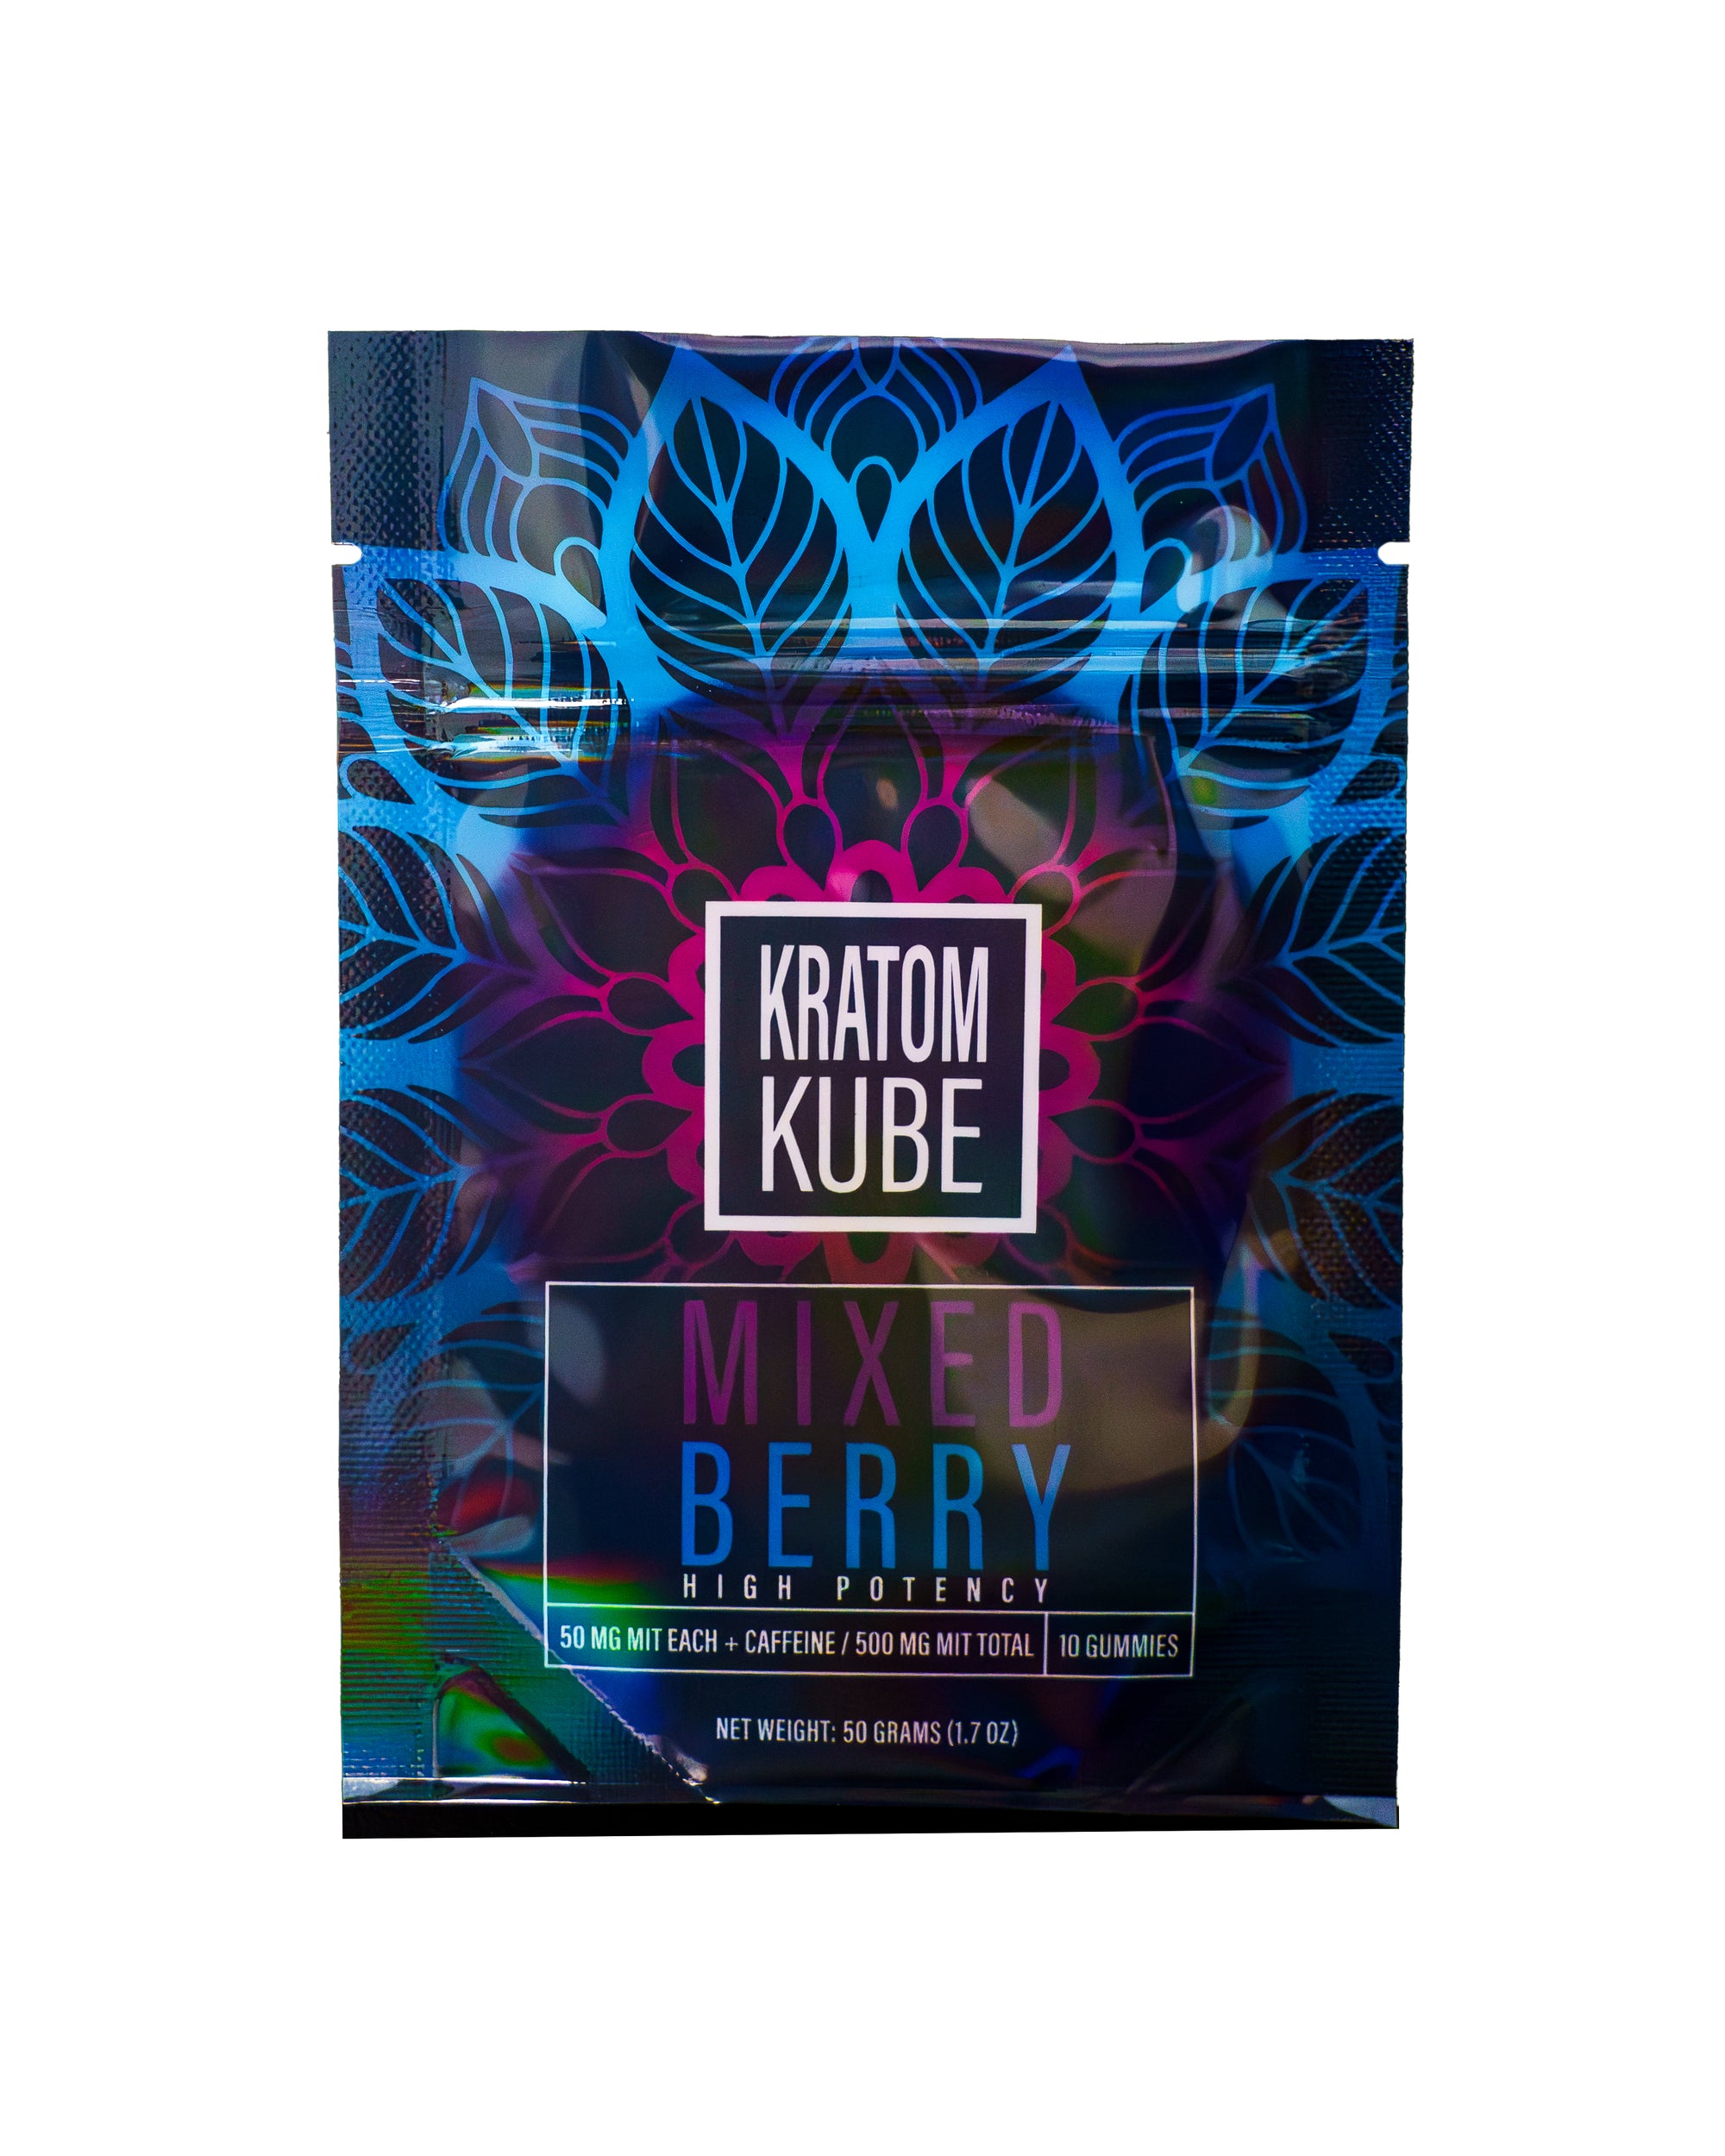 Kratom Kube - Mixed Berry with Energy - 10 Pack Box